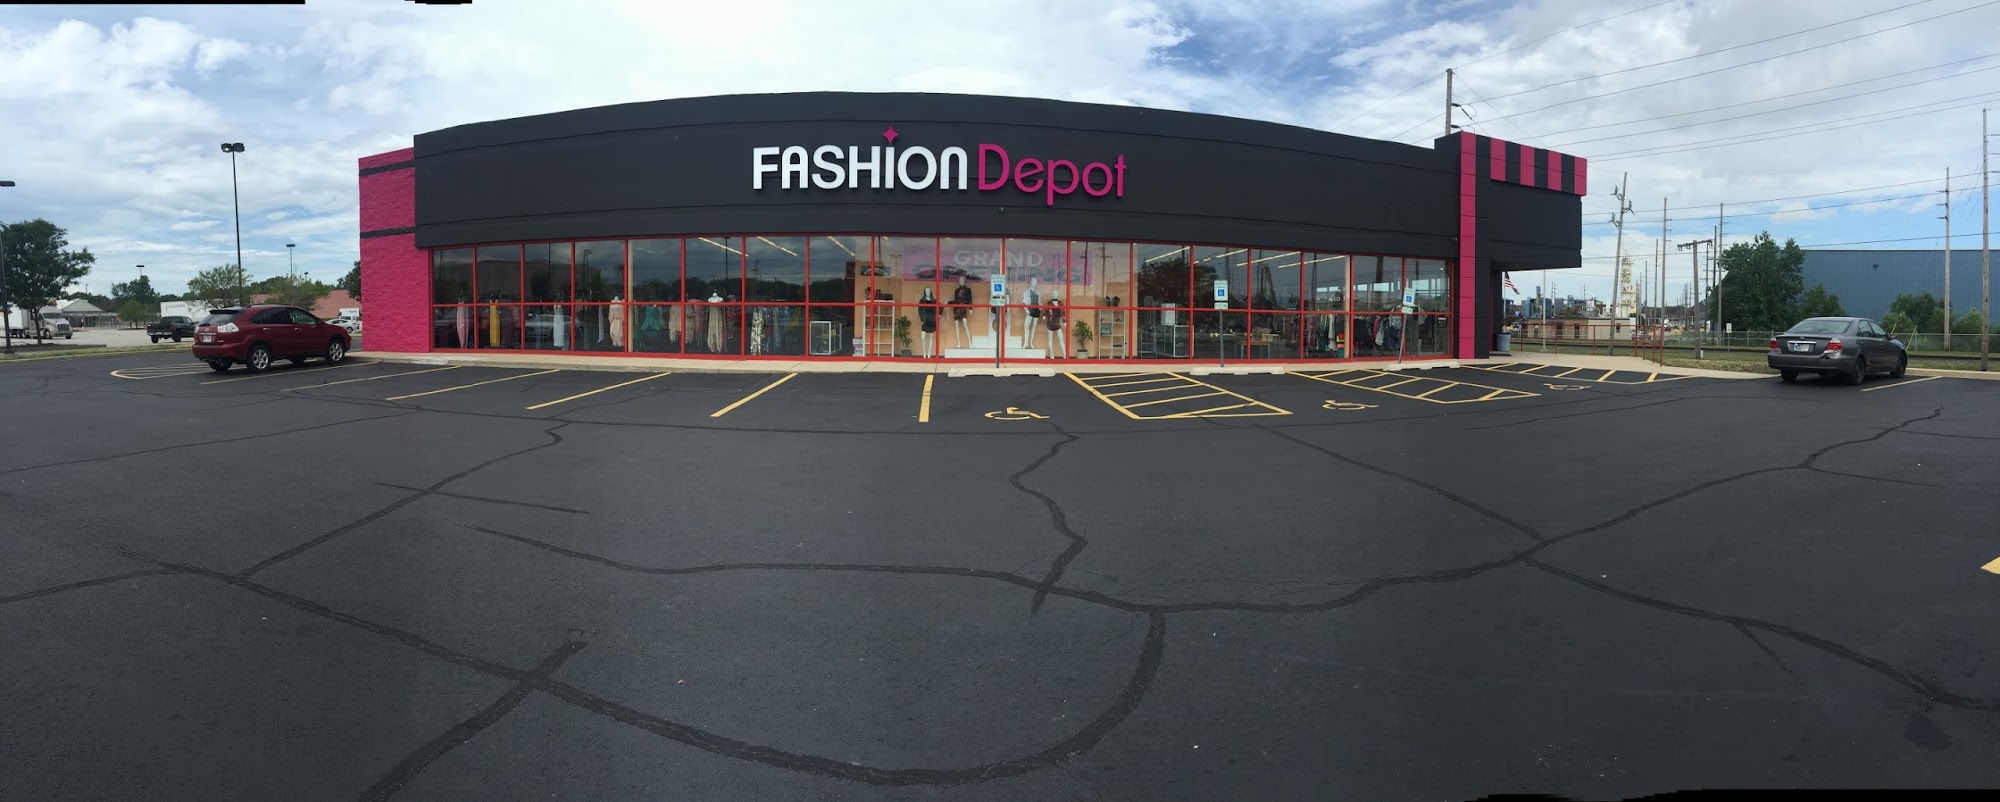 Fashion Depot